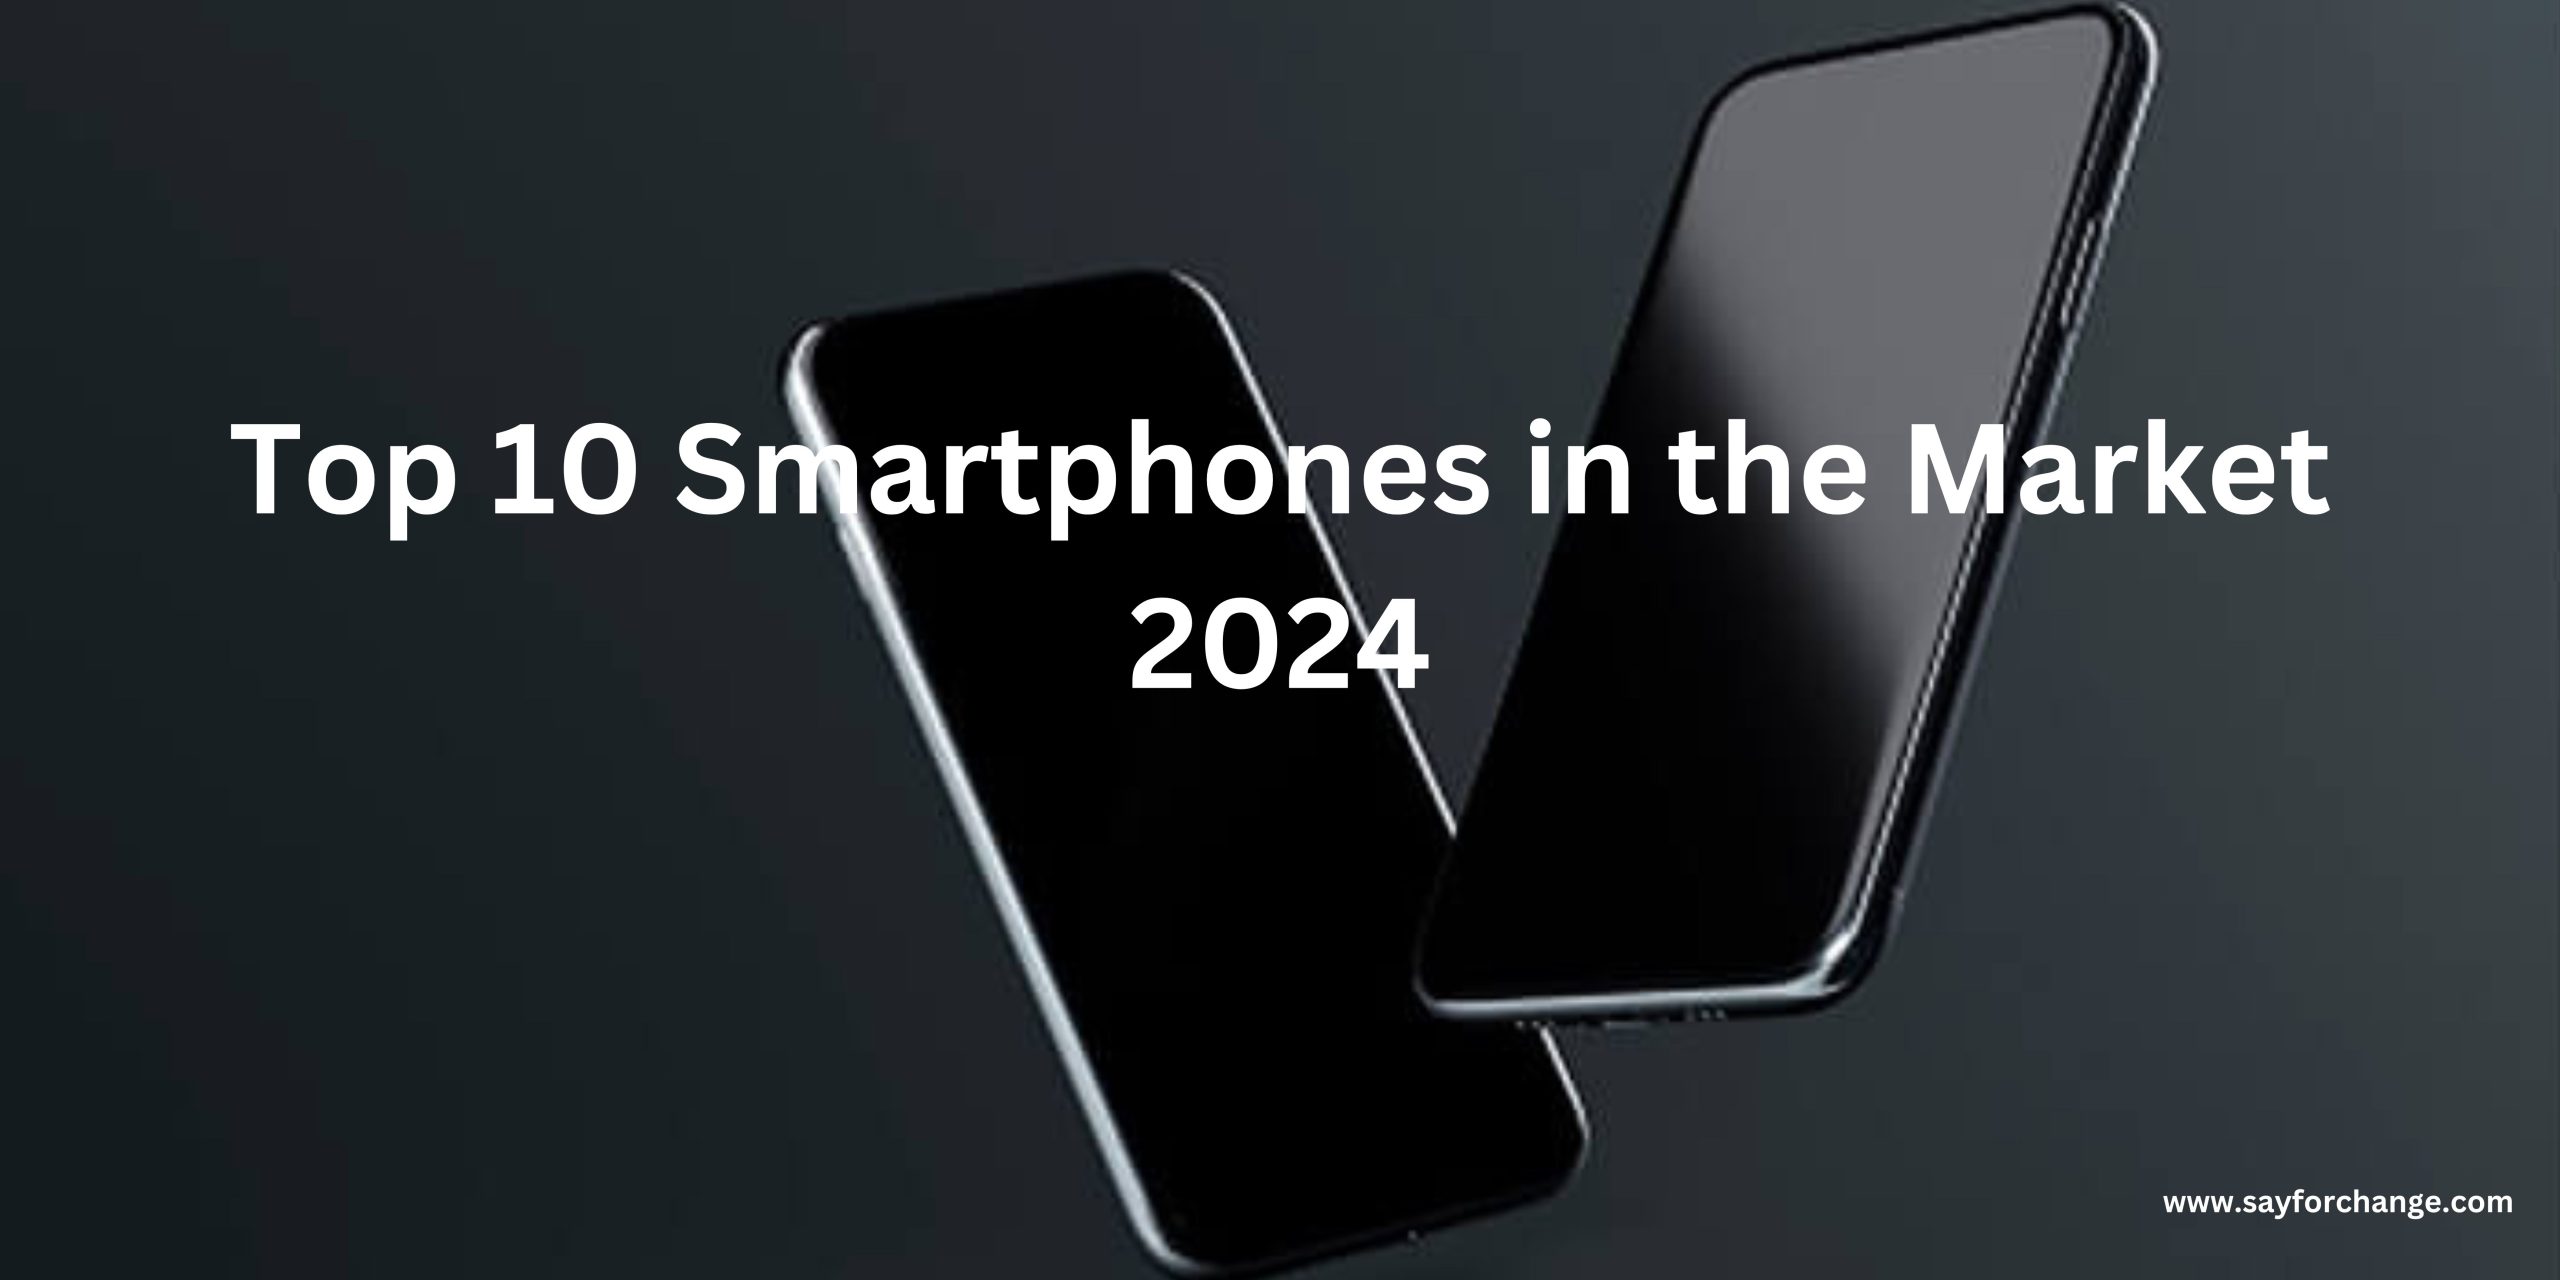 Top 10 Smartphones in the Market 2024